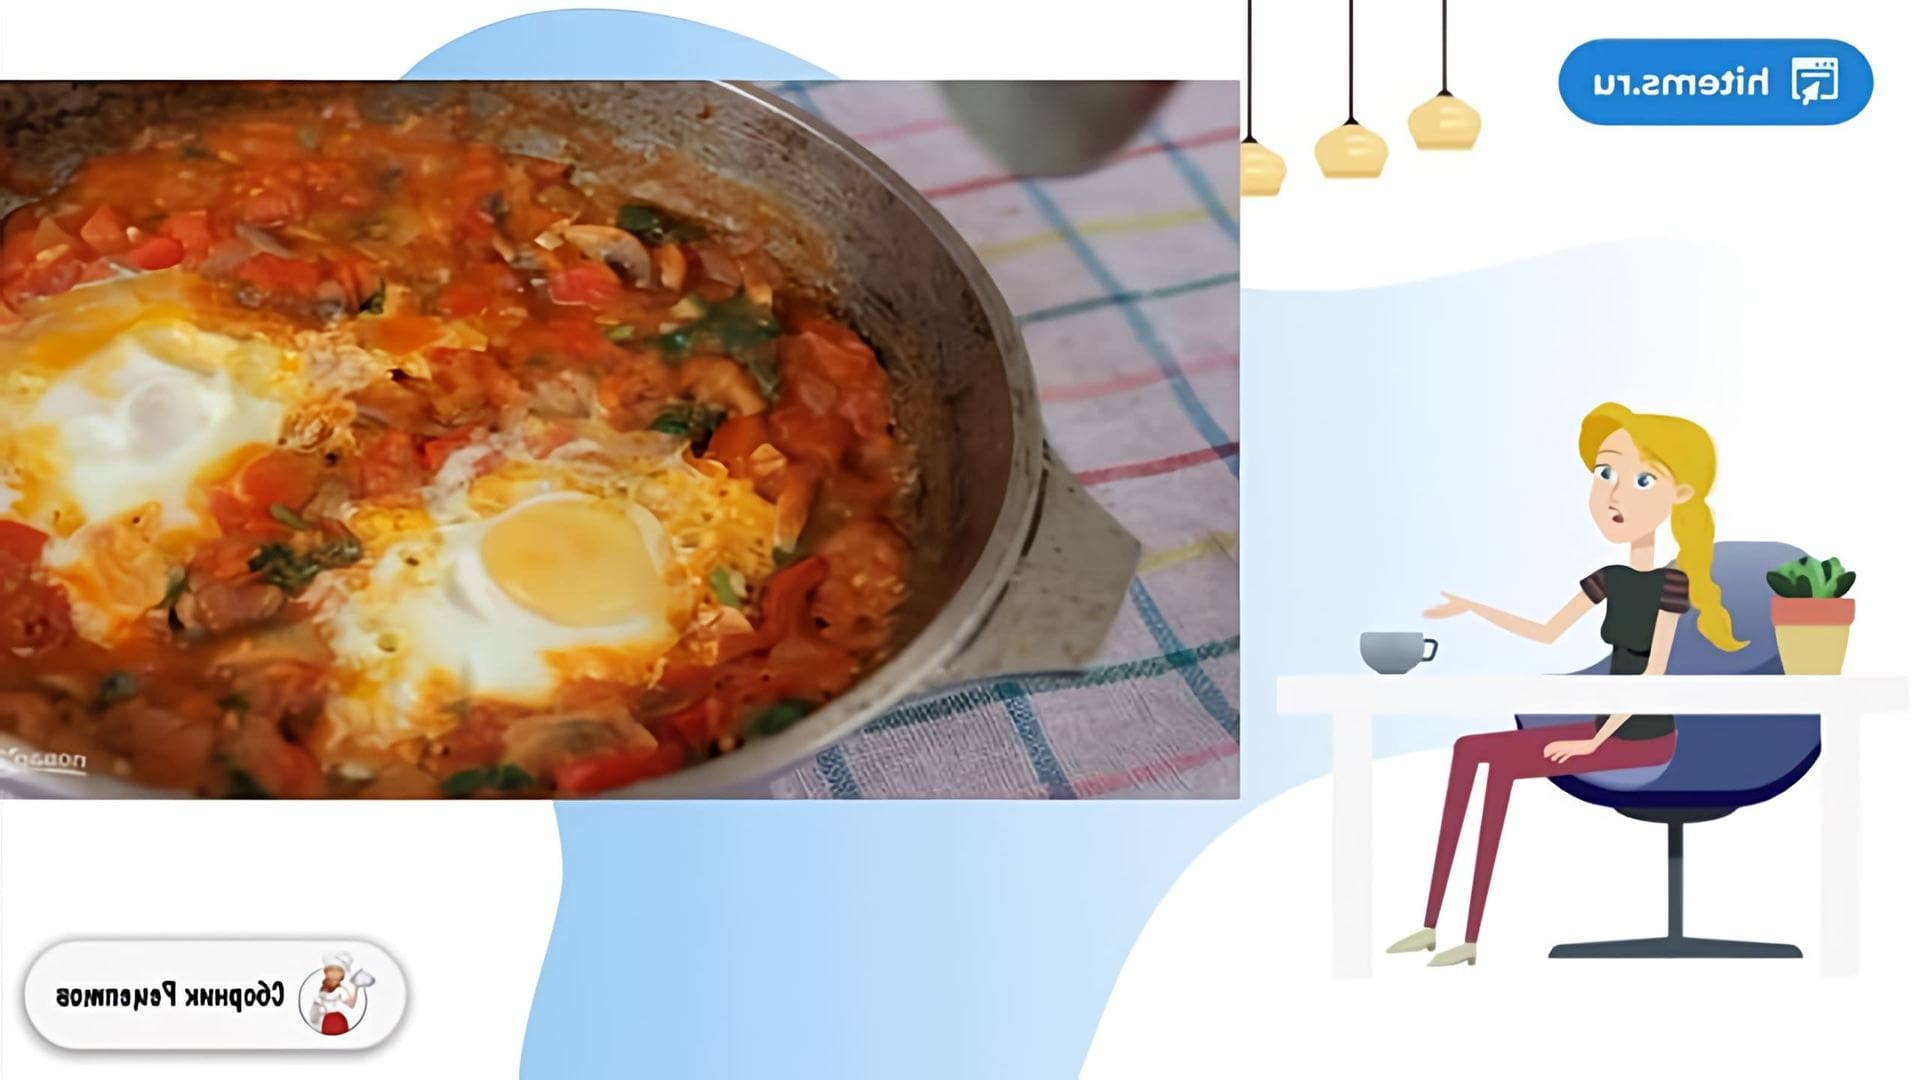 В этом видео демонстрируется рецепт приготовления шакшуки - израильского завтрака, основанного на помидорах и яйцах